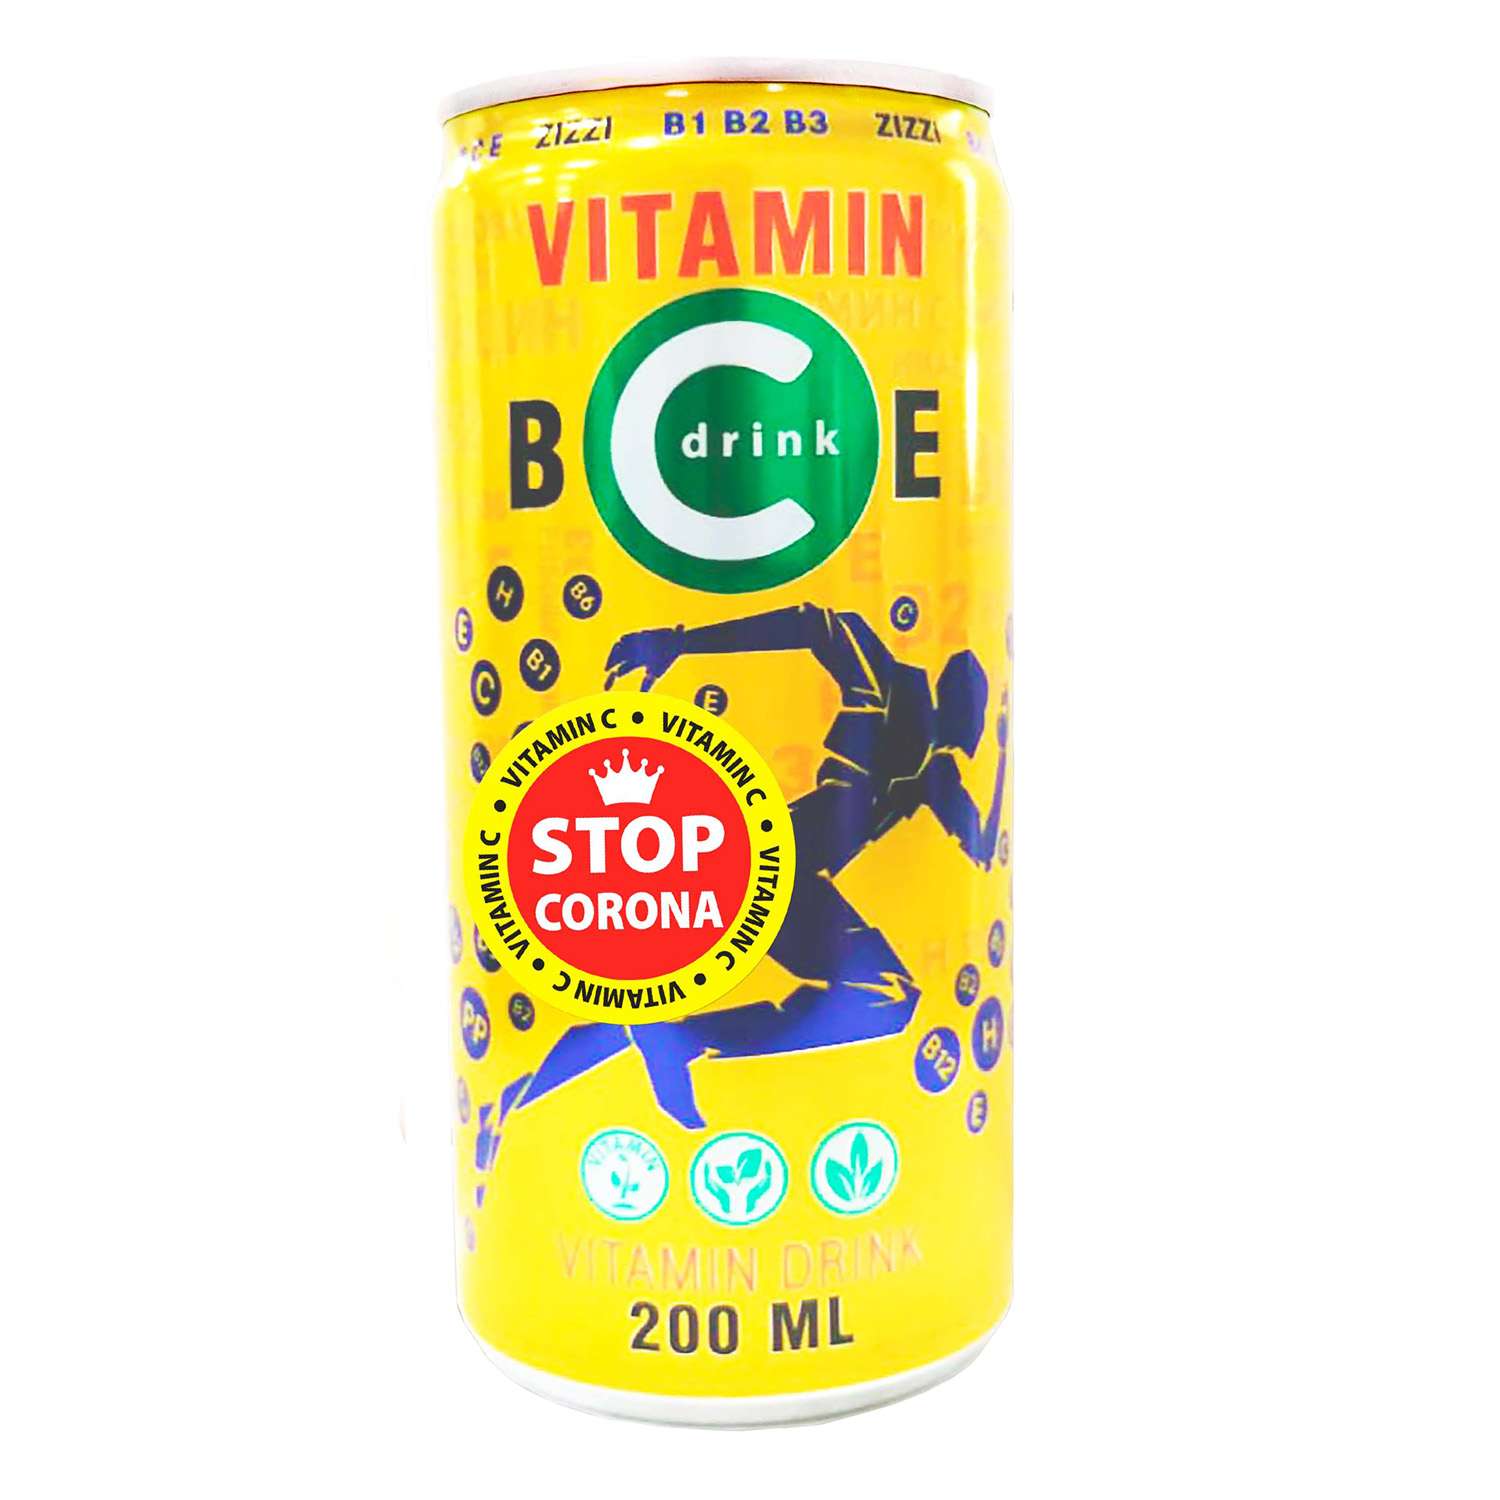 Витаминизированный напиток ZIZZI Витаминны группы В С Е 200 мл - фото 1